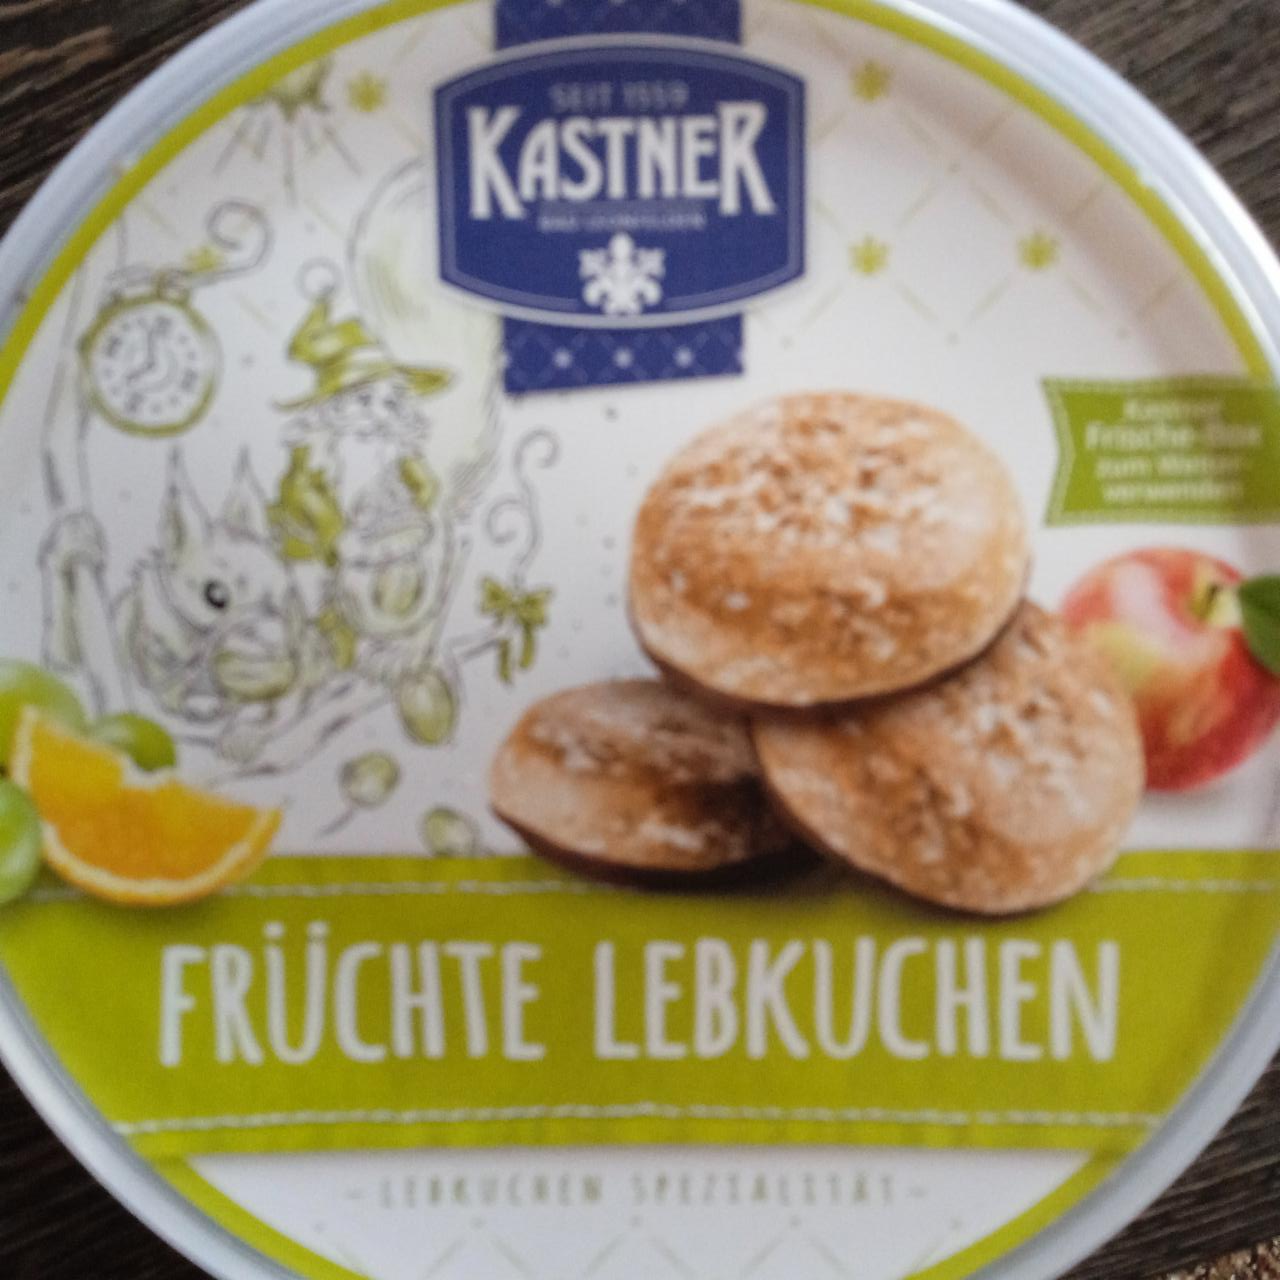 Fotografie - Früchte lebkuchen Kastner